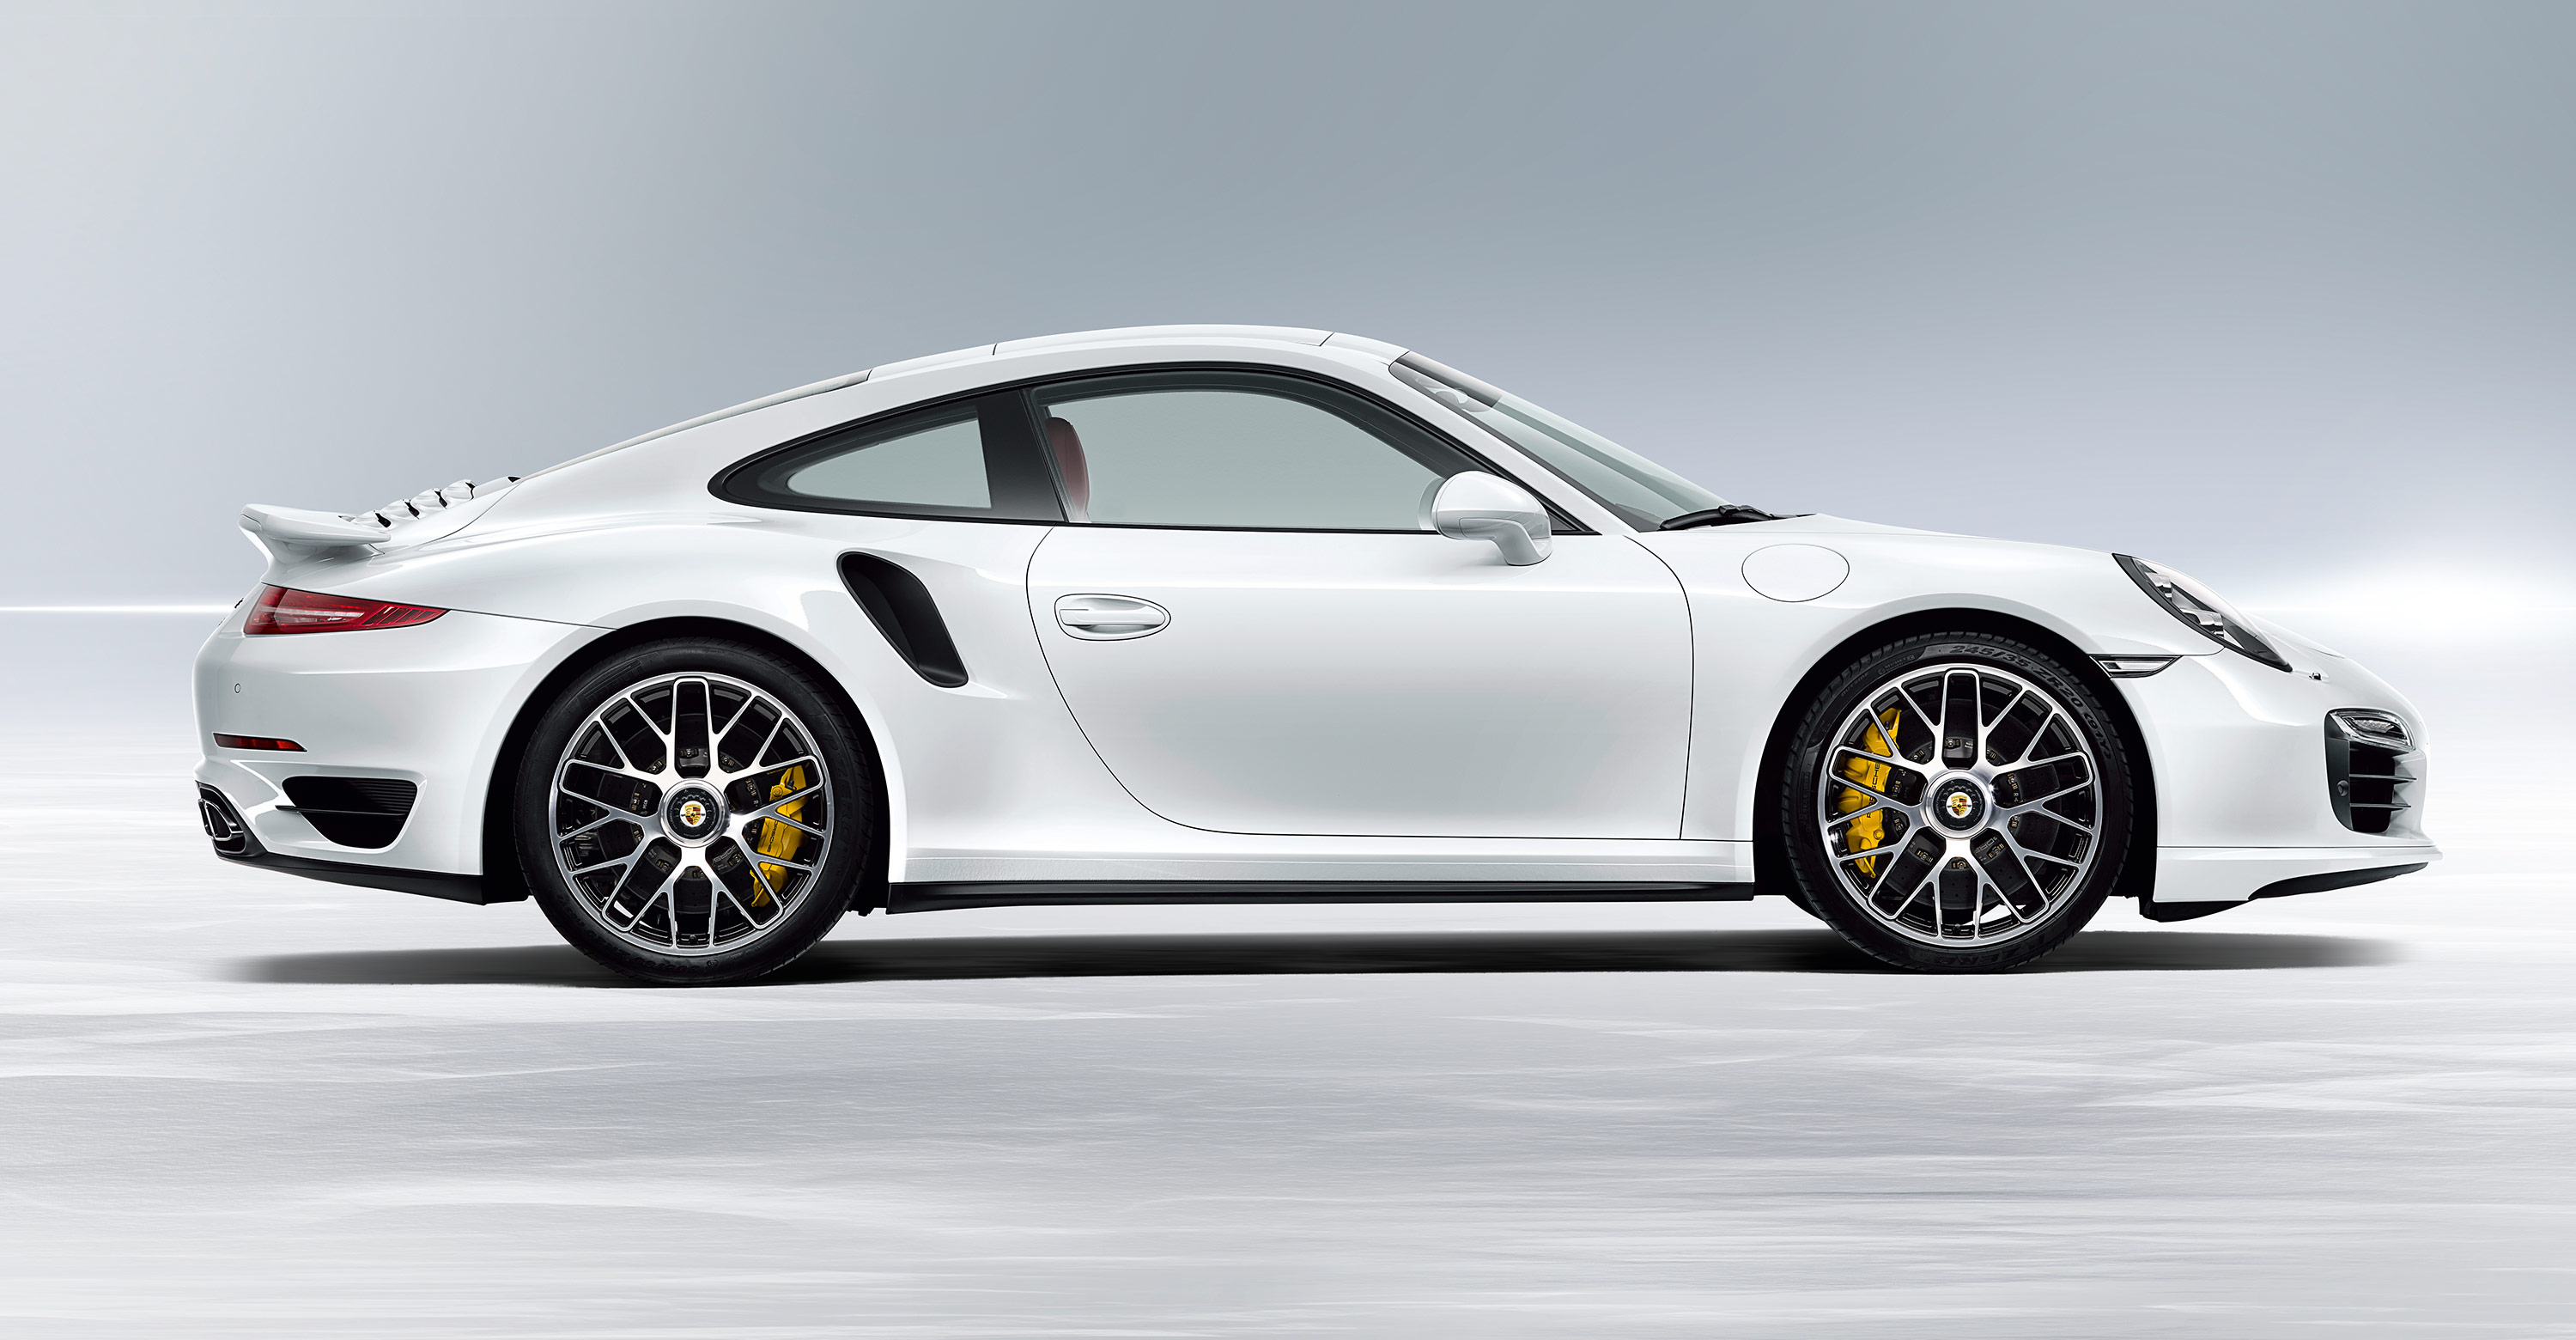 2014 Porsche 911 Turbo S, takeover lease - 6SpeedOnline - Porsche Forum and  Luxury Car Resource